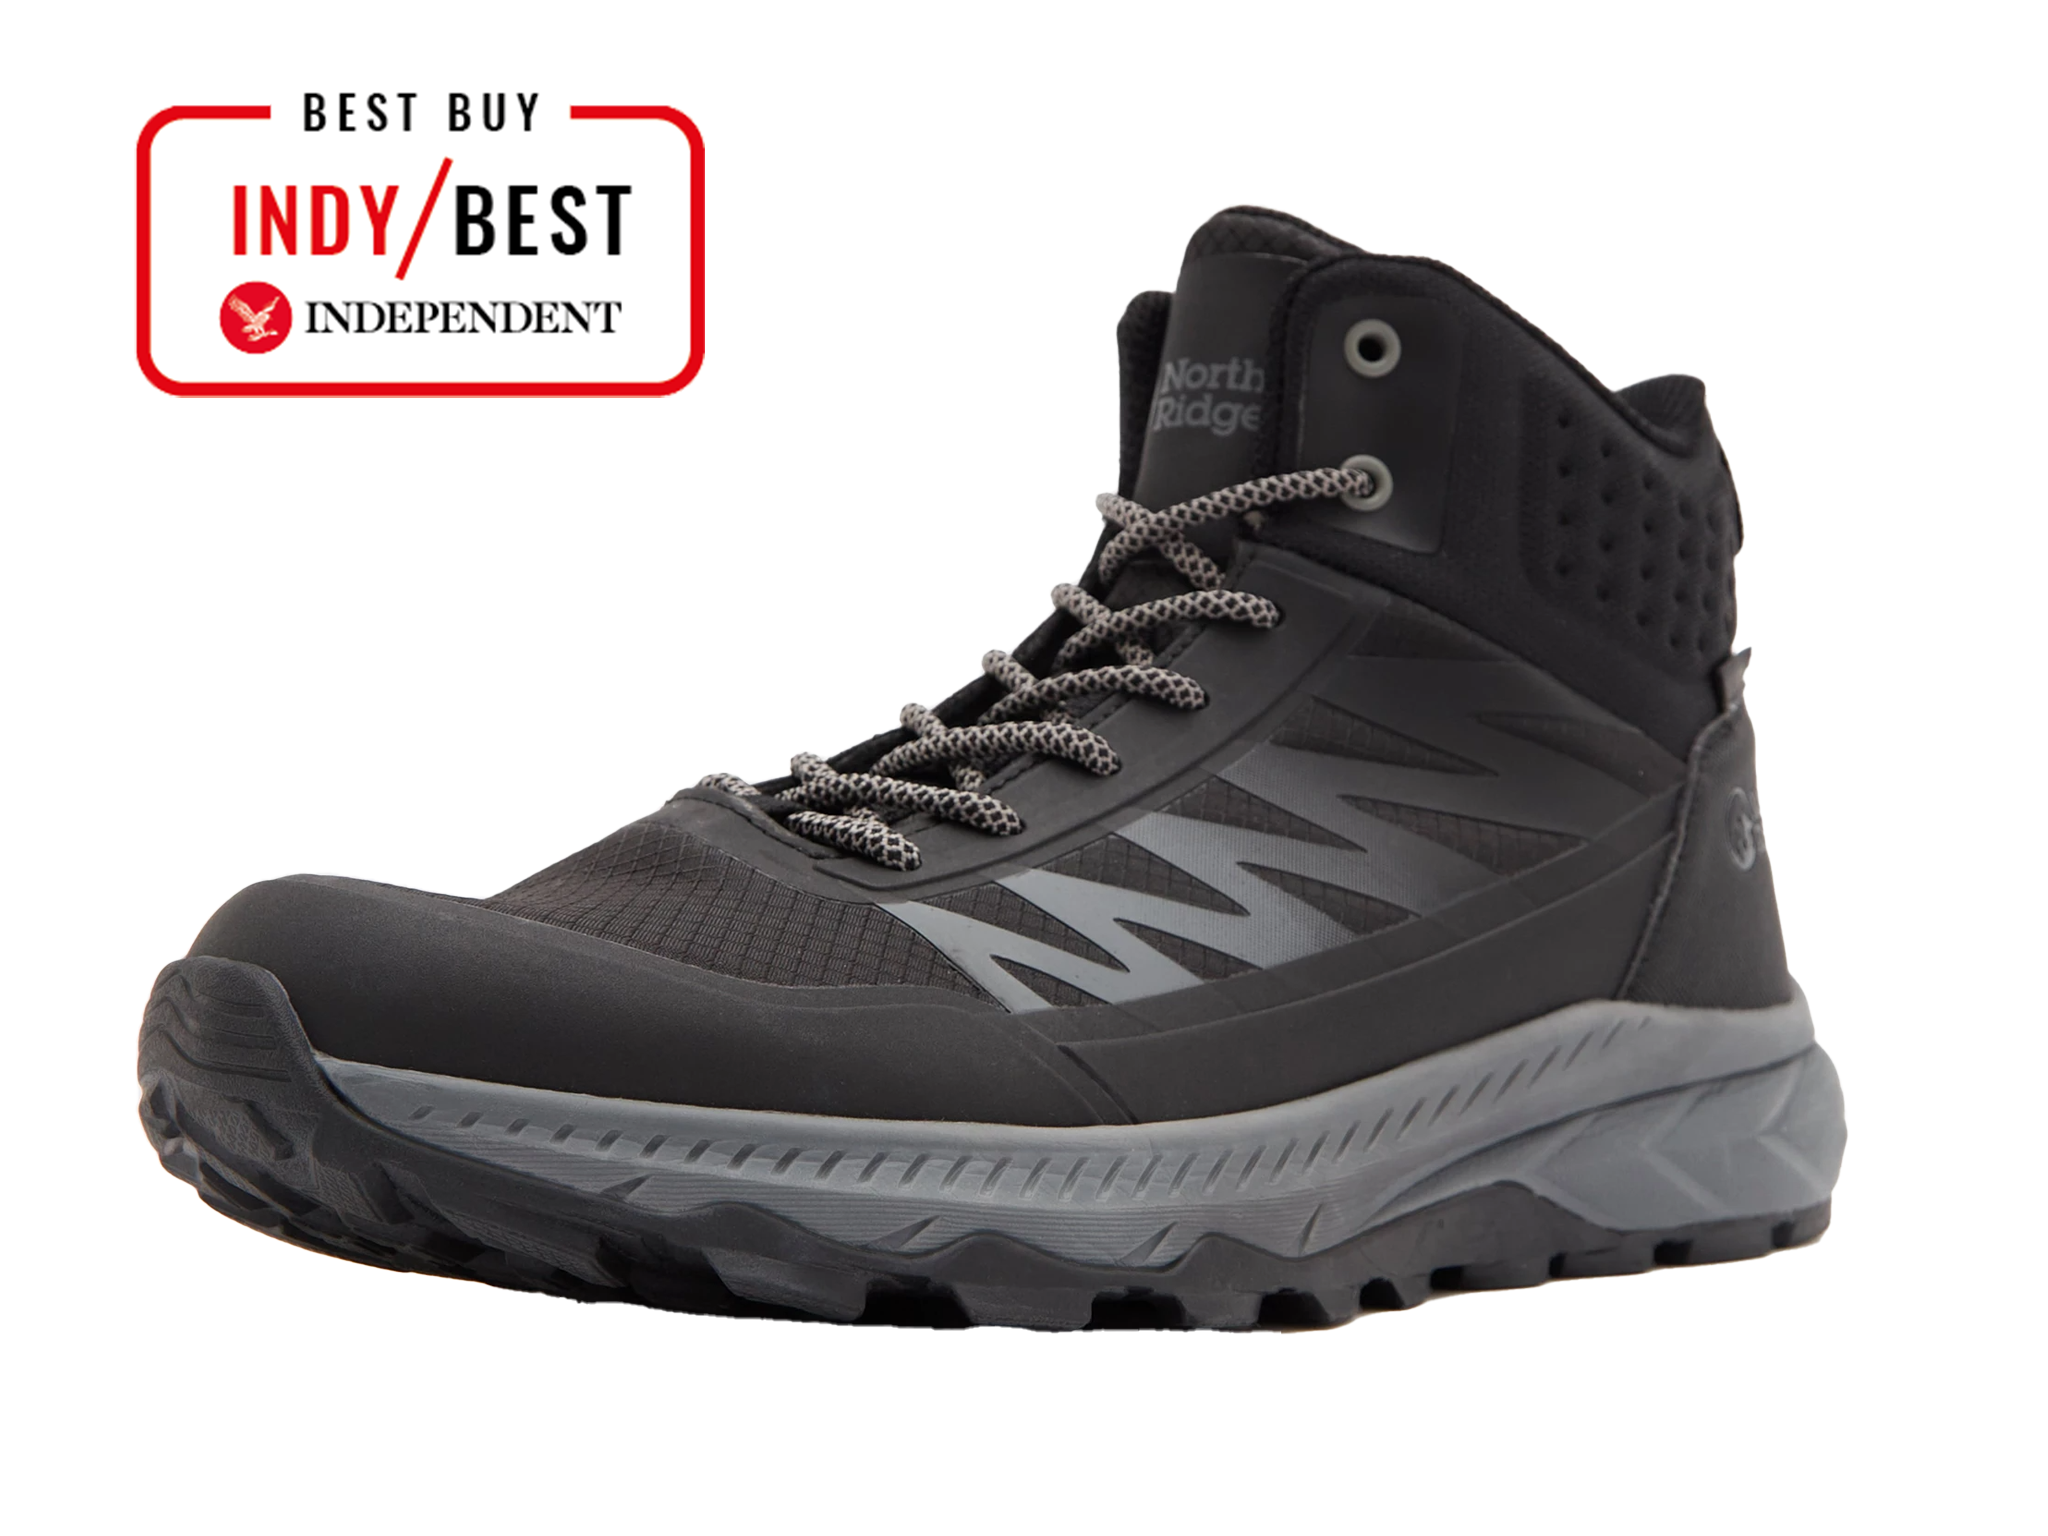  best men’s walking boots review 2024 indybest North Ridge Harlow